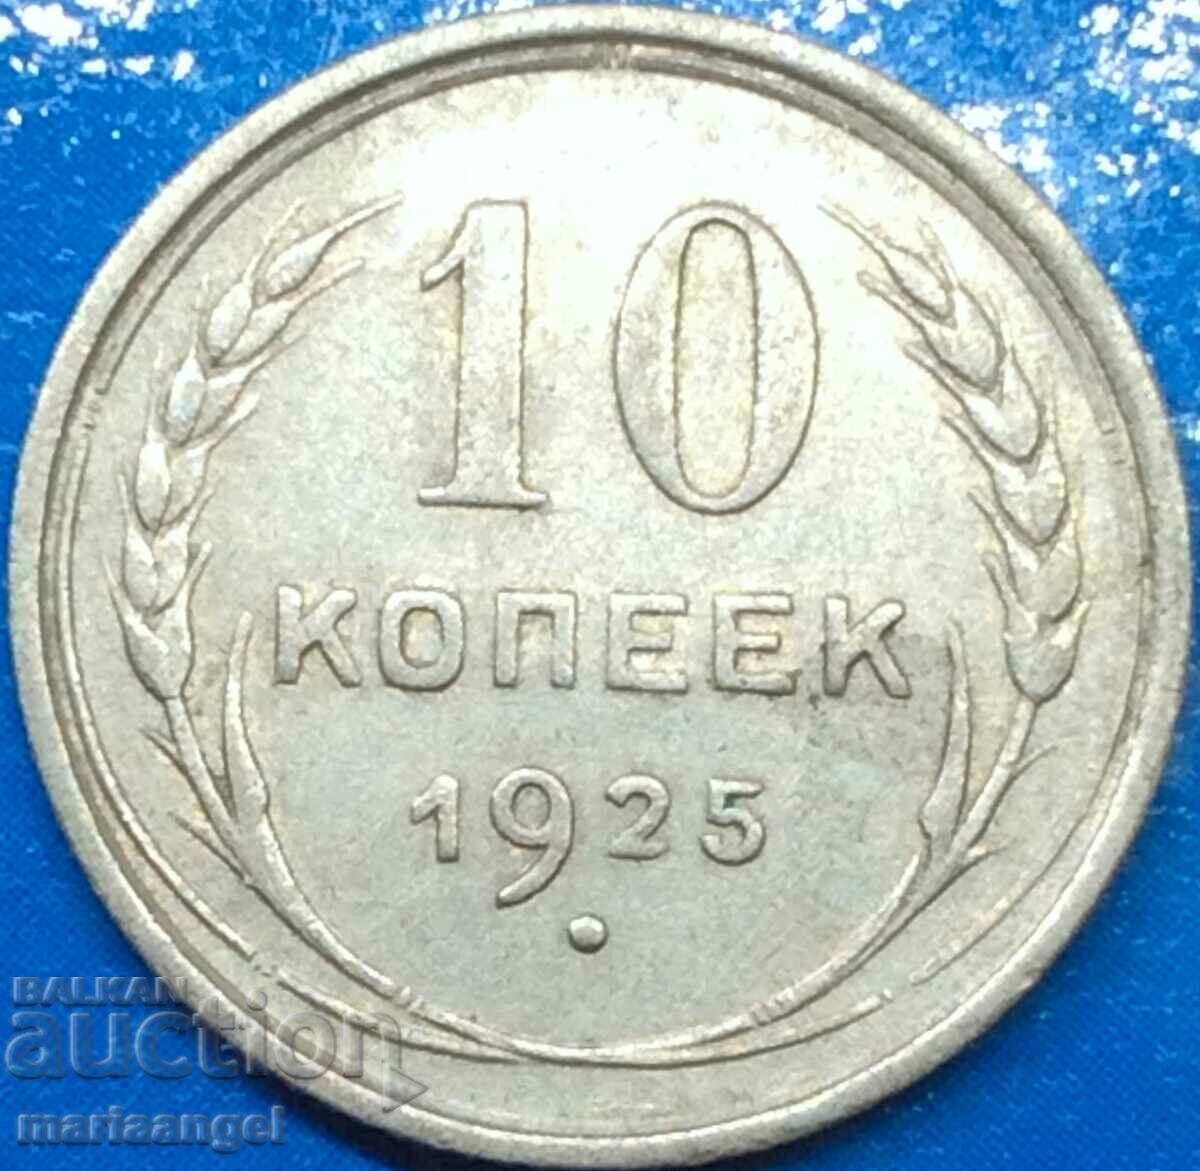 10 kopecks 1925 Russia USSR silver